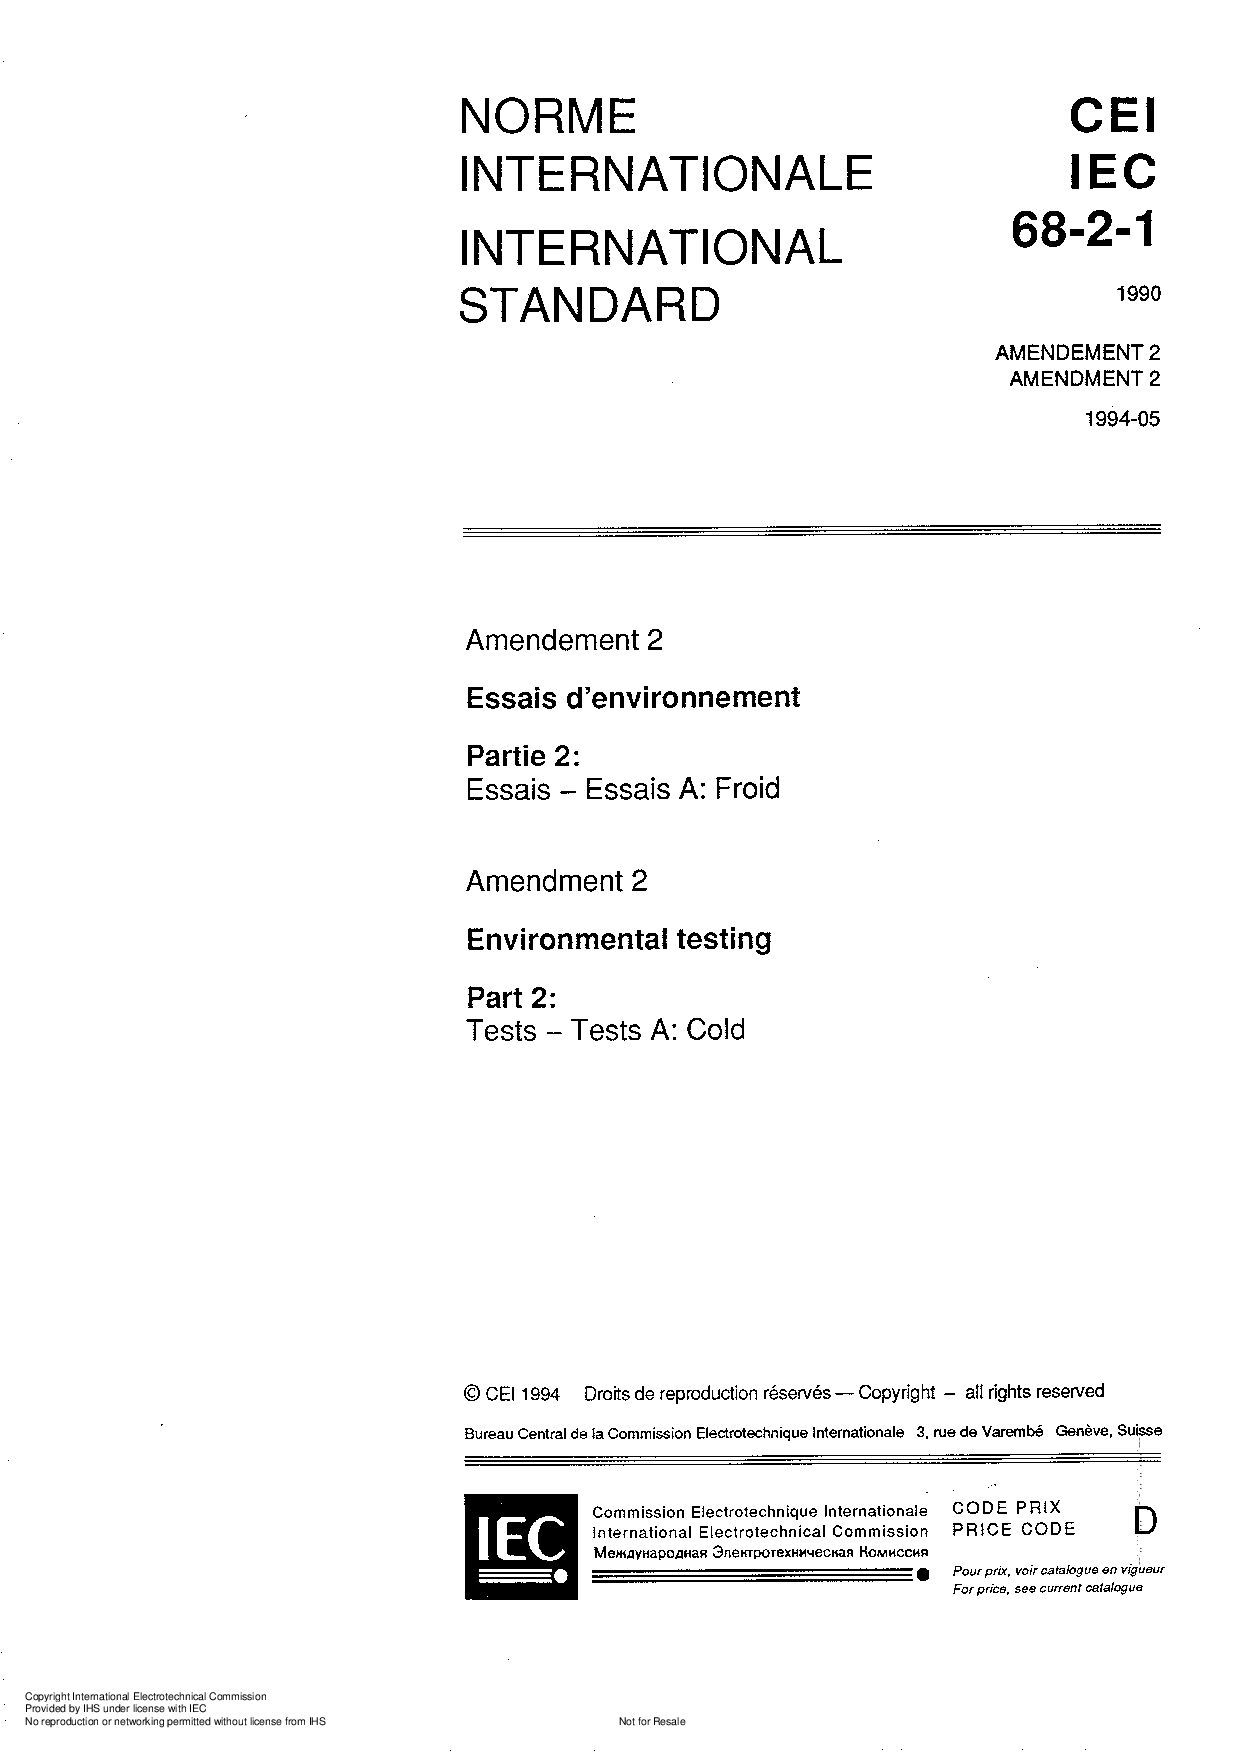 IEC 60068-2-1:1990